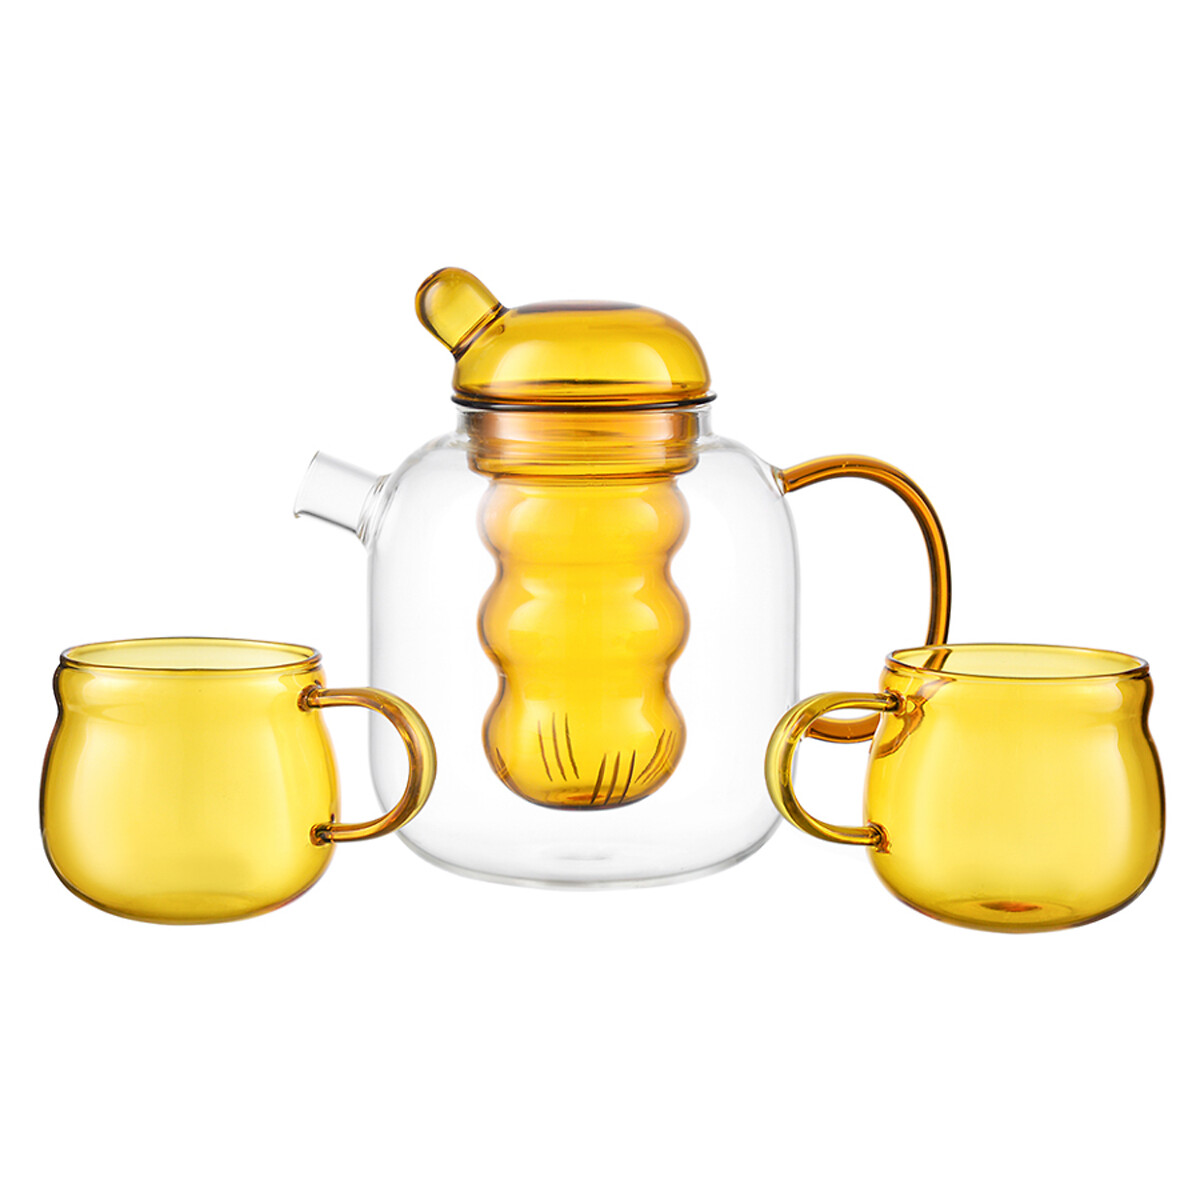 Чайник стеклянный с 2 чашками 12 л желтый единый размер желтый чайник с двумя чашками 1 2 л желтый kw ss tpcp gls yl 1200 smart solutions